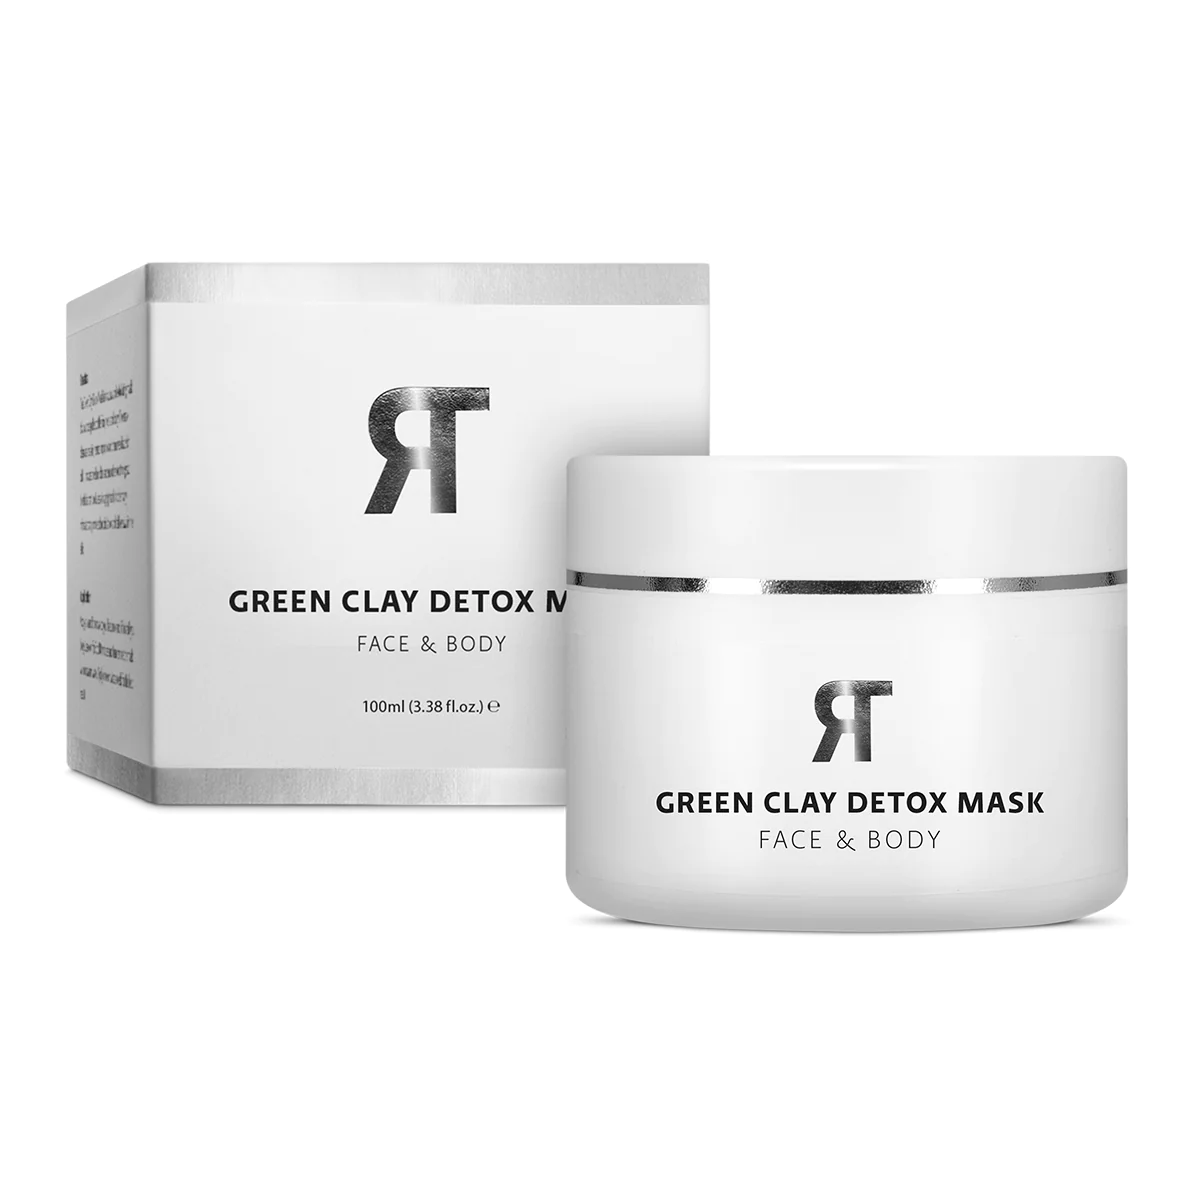 green-clay-detox-mask_4a7c2cba-8b2f-485b-922f-6b3de2234a81_1024x1024@2x.jpg